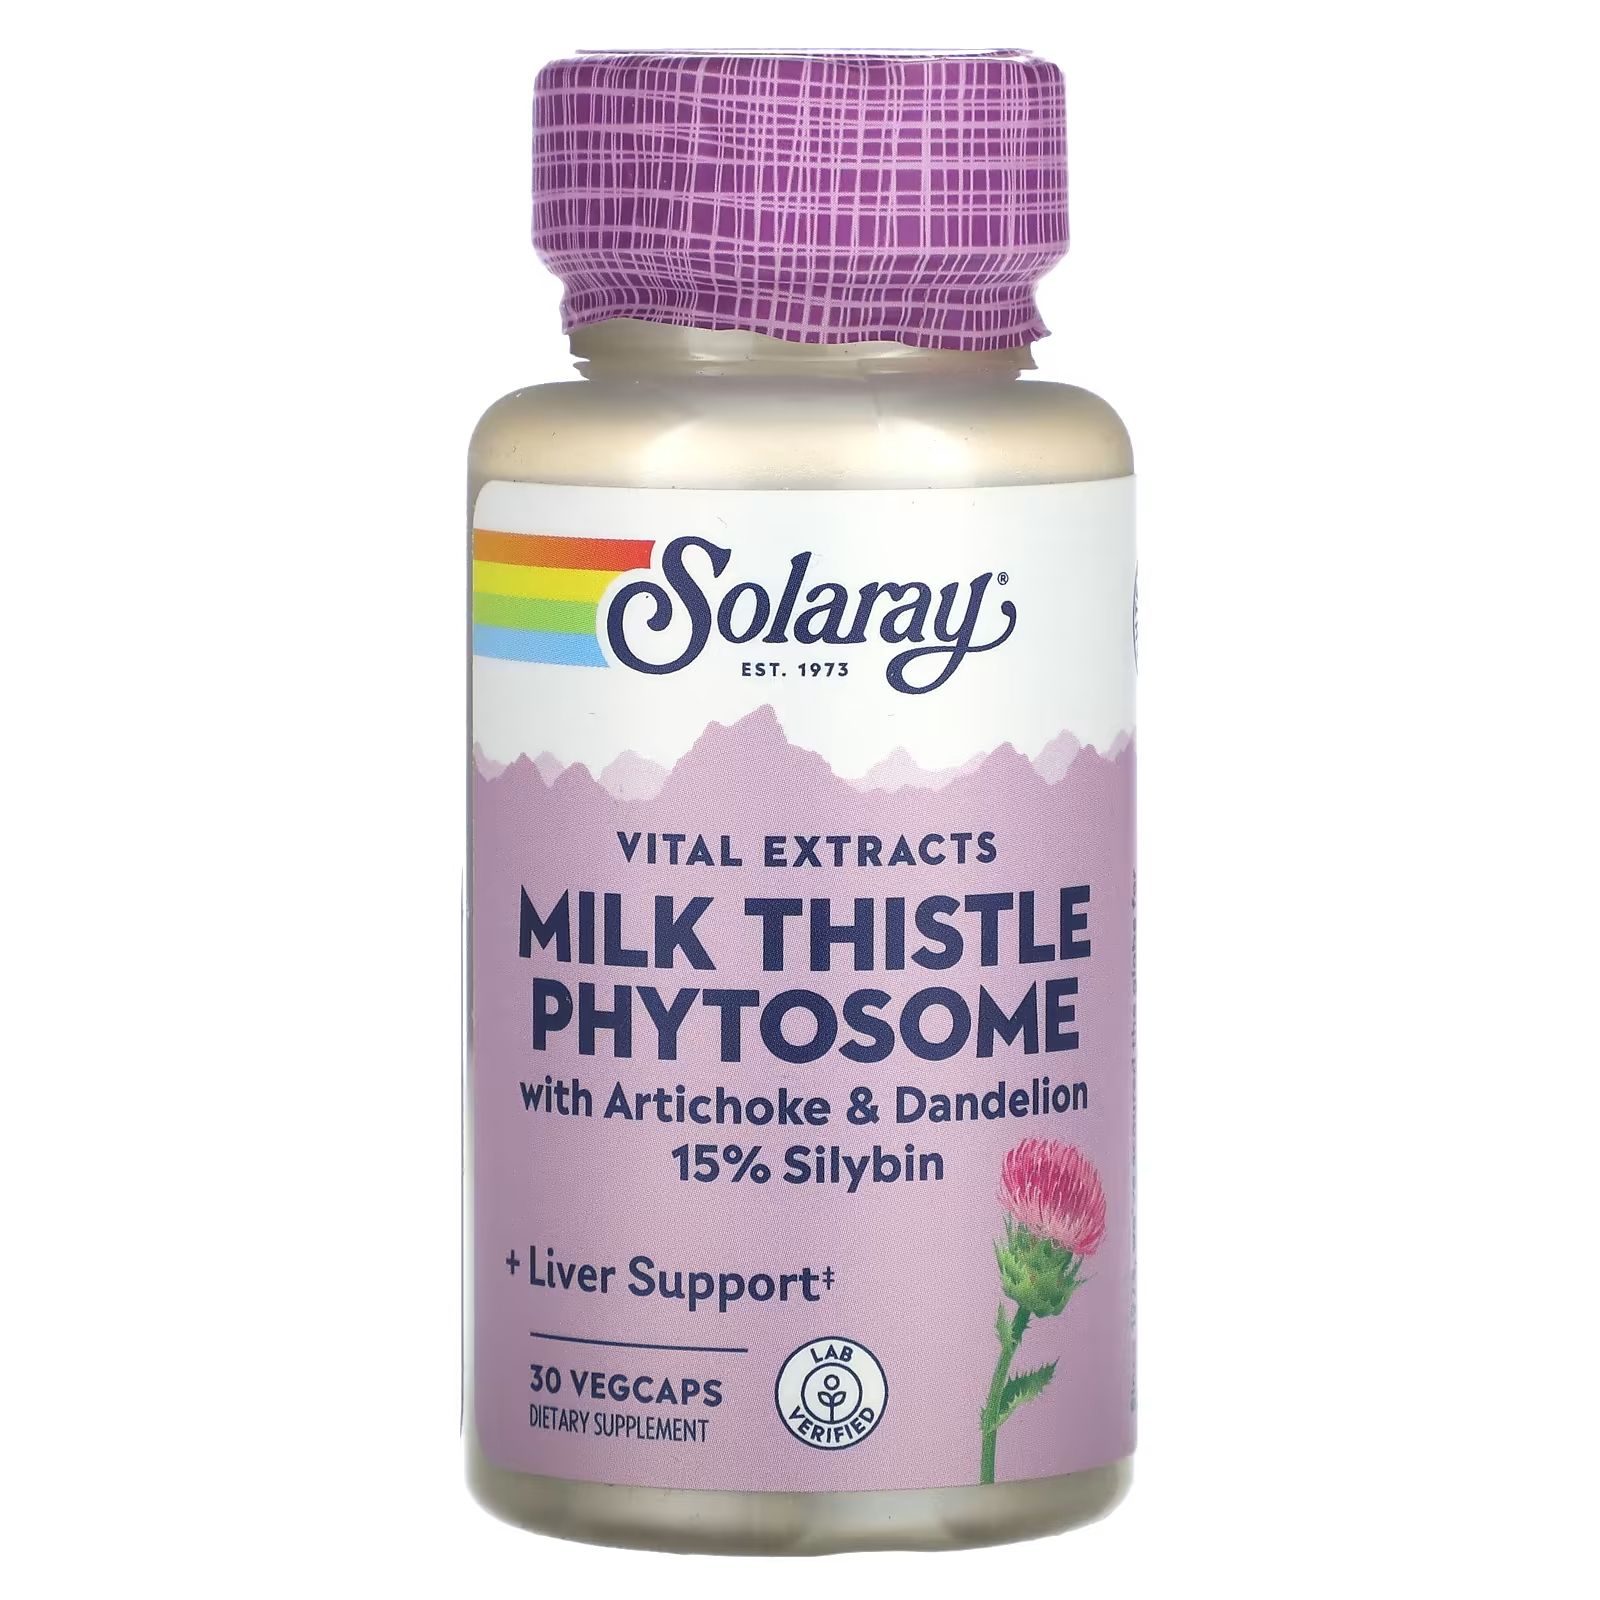 Solaray Vital Extracts Фитосомы расторопши 30 растительных капсул фитосомы куркумы solaray 30 растительных капсул